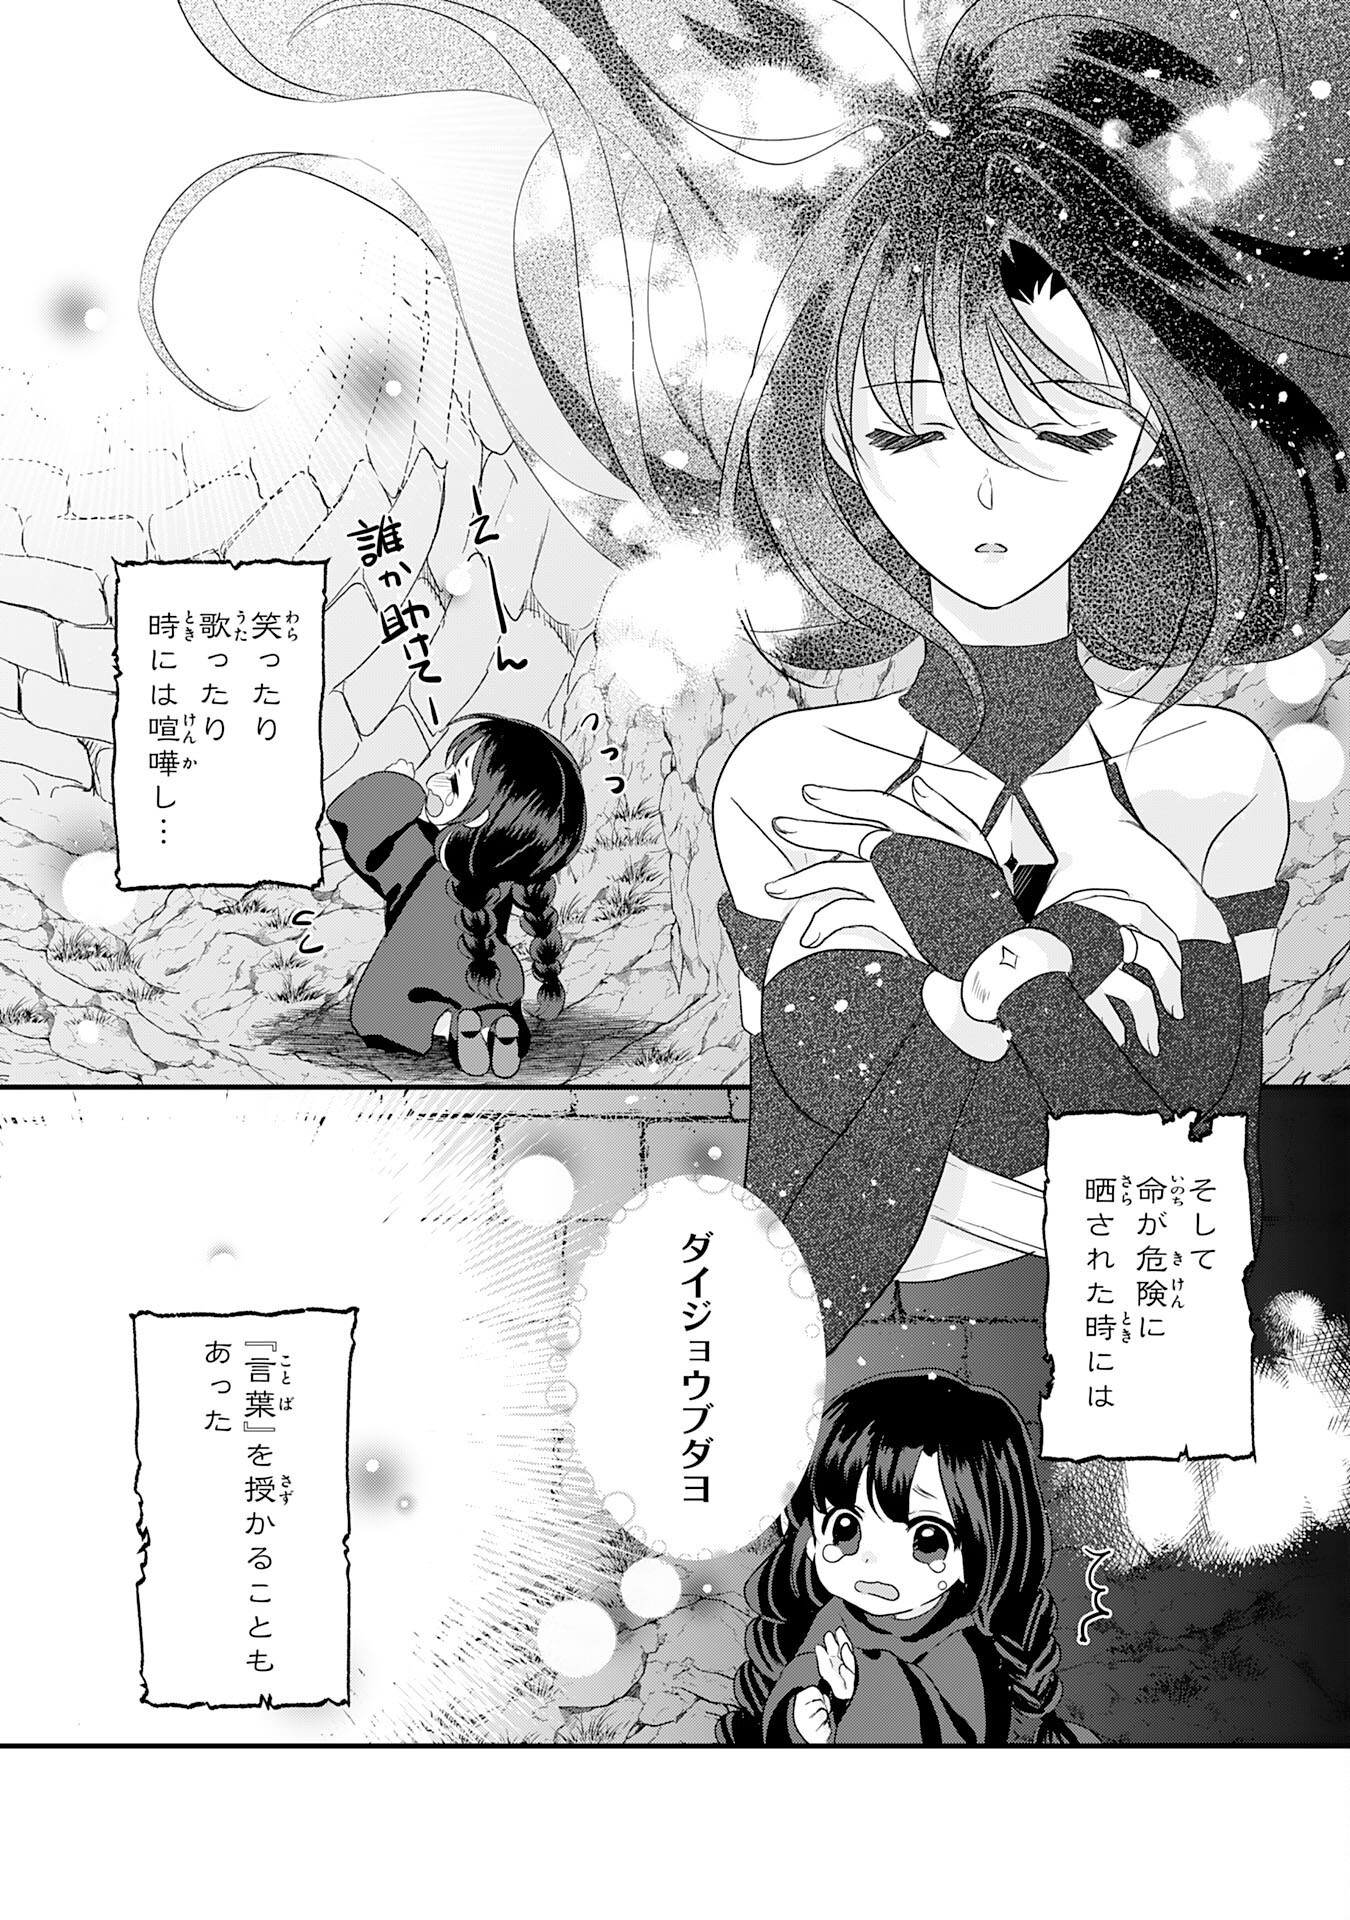 Kounchi 999 no Watashi, Sokushi Mahou ga Zettai ni Seikou suru no de Sekai Saikyou desu - Chapter 24 - Page 2